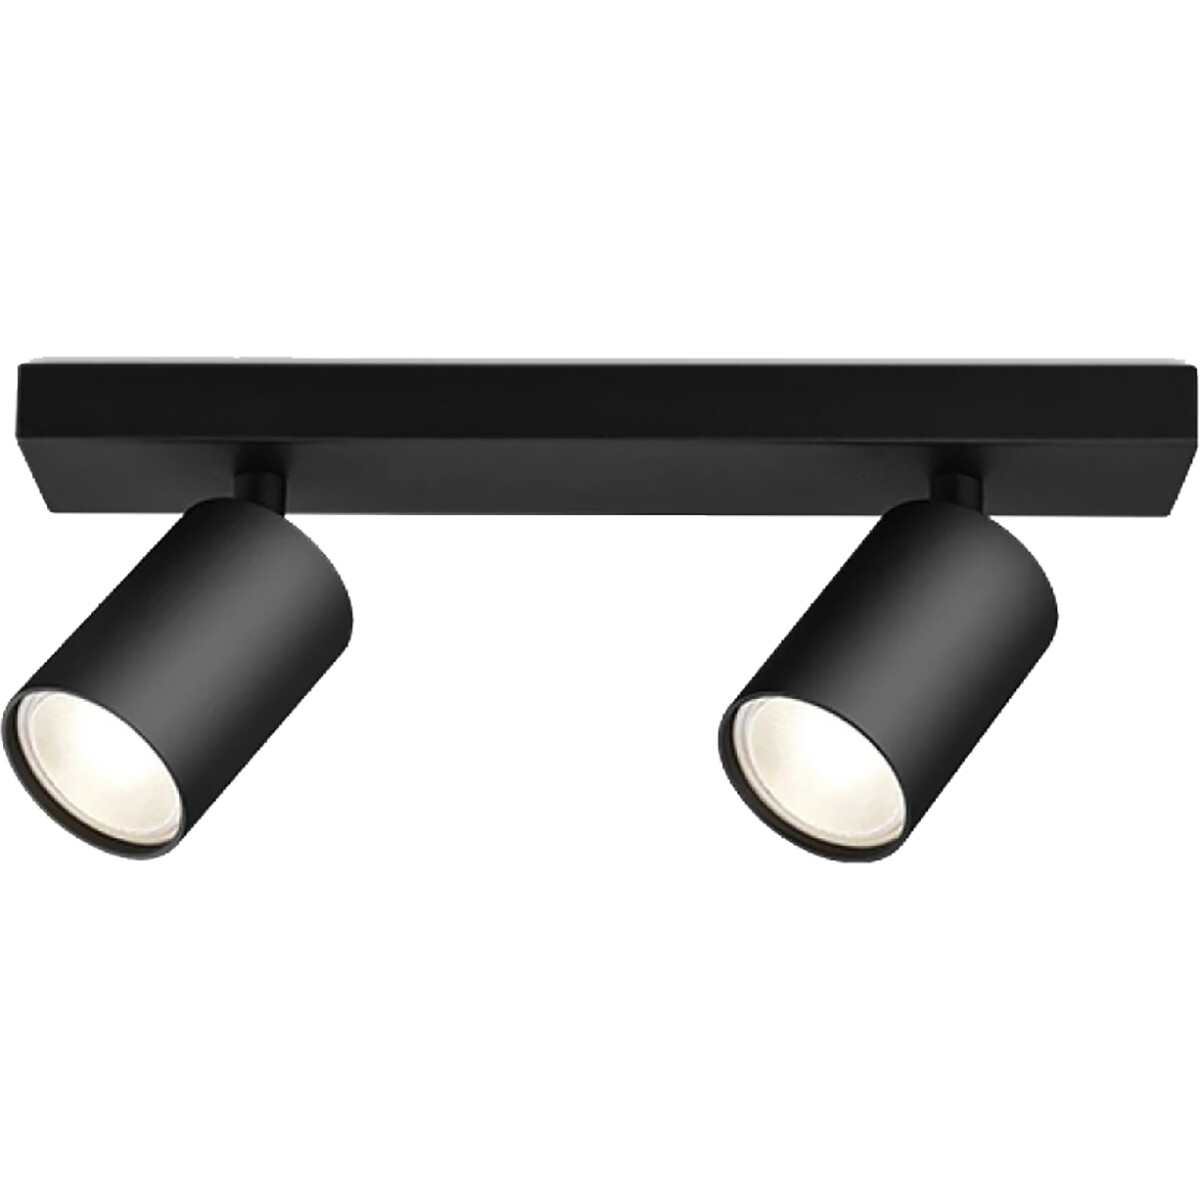 LED Plafondspot - Brinton Betin - GU10 Fitting - 2-lichts - Rond - Mat Zwart - Kantelbaar - Aluminiu